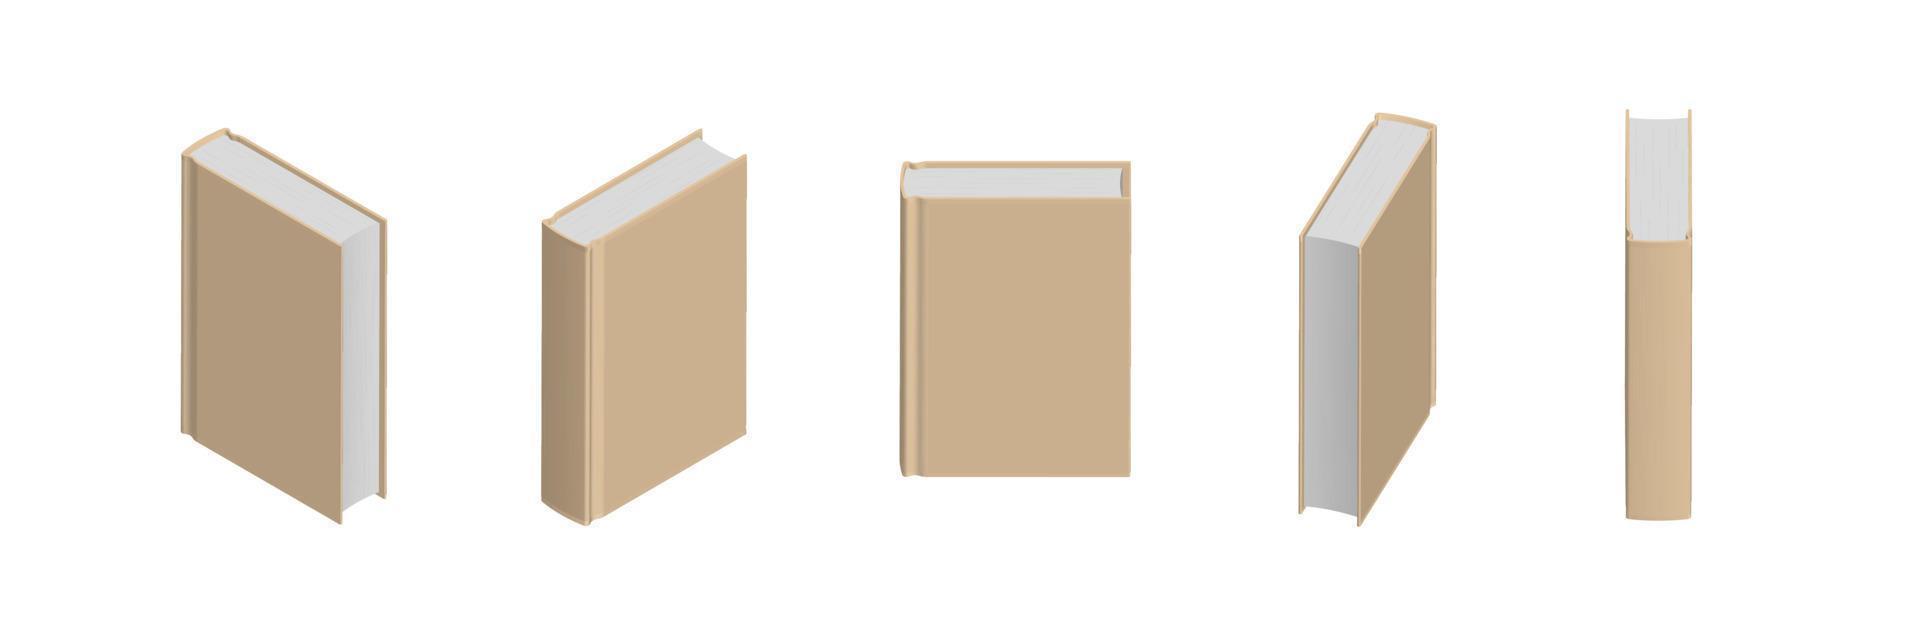 ensemble de livres beiges fermés dans différentes positions pour librairie vecteur